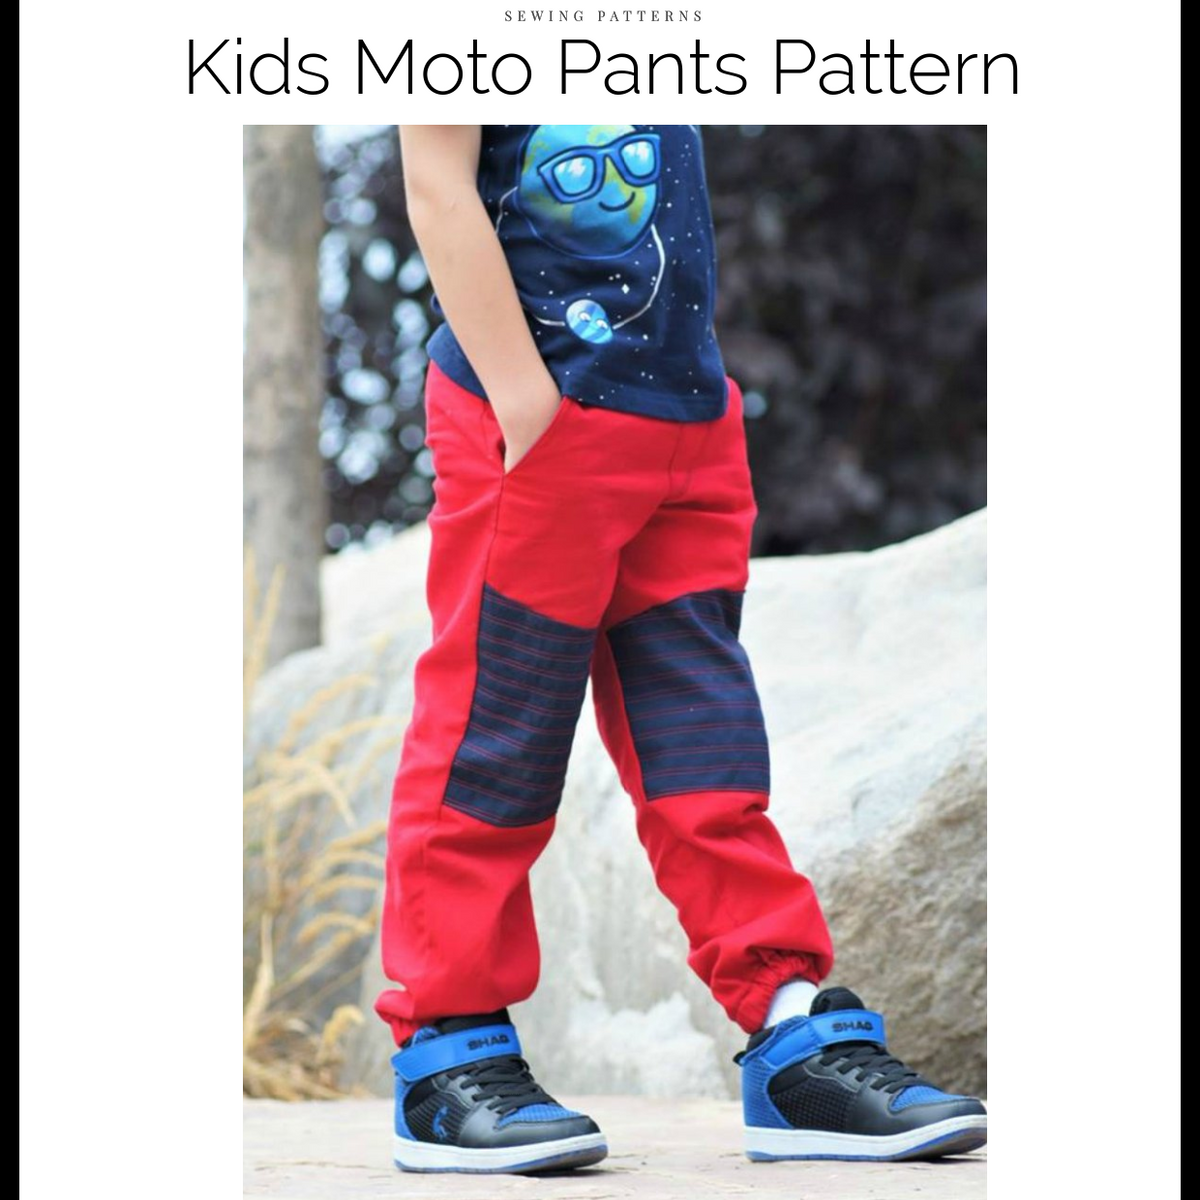 Moto Pants Pattern